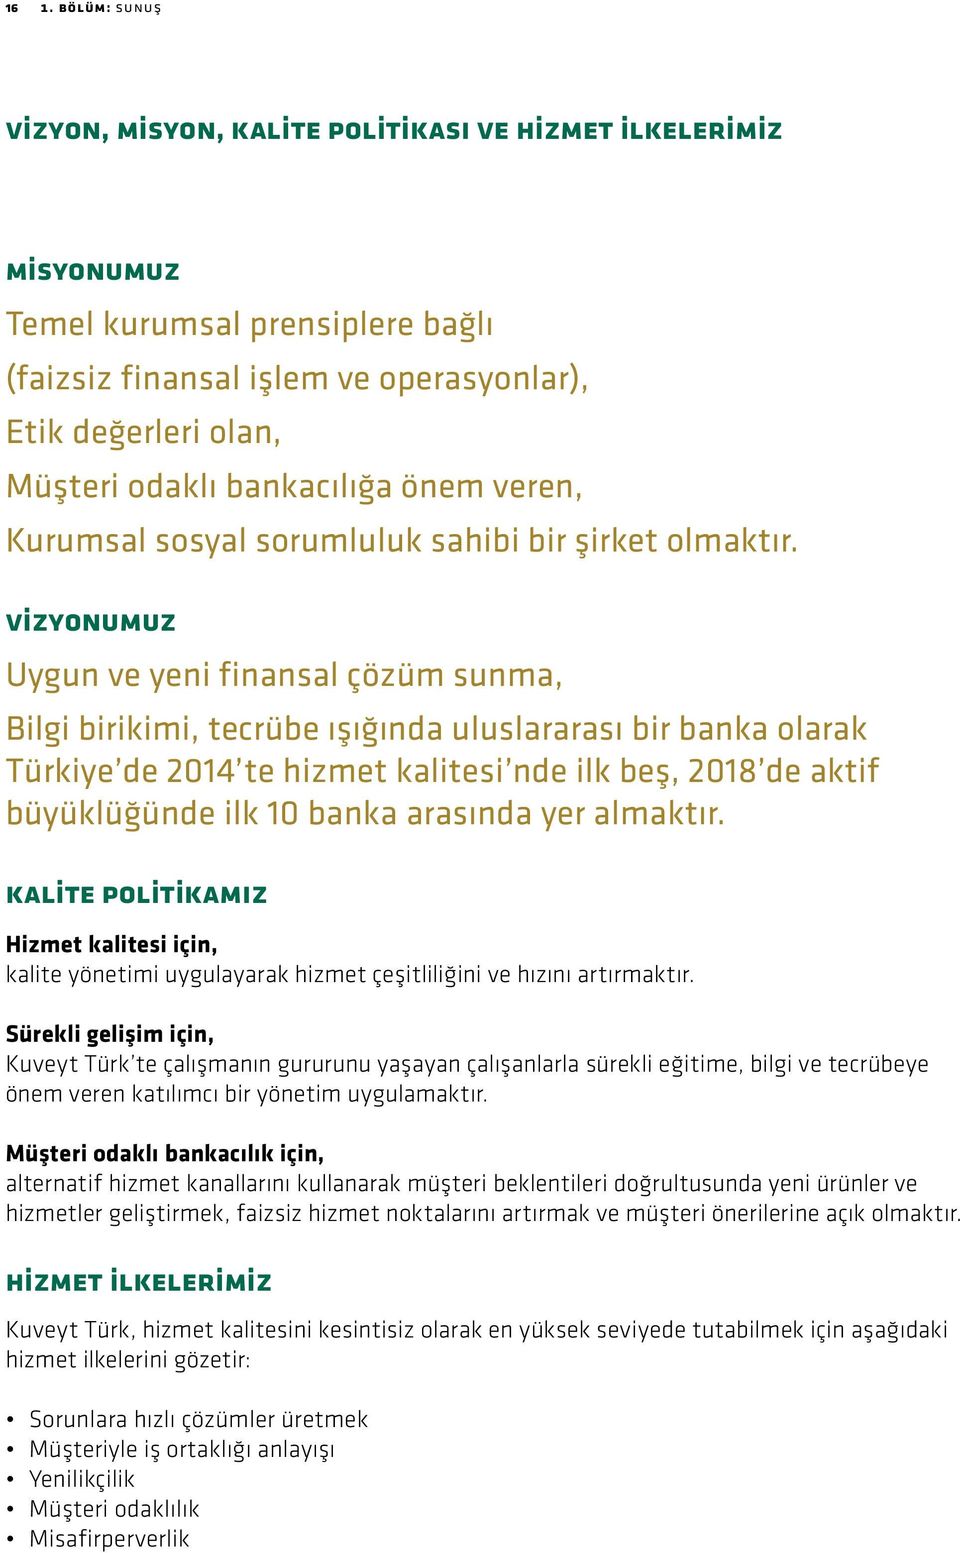 Vizyonumuz Uygun ve yeni finansal çözüm sunma, Bilgi birikimi, tecrübe ışığında uluslararası bir banka olarak Türkiye de 2014 te hizmet kalitesi nde ilk beş, 2018 de aktif büyüklüğünde ilk 10 banka